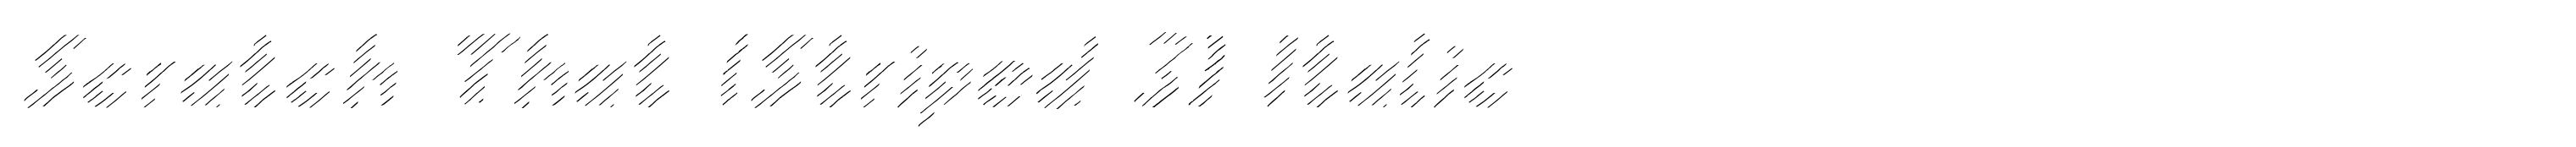 Scratch That (Striped 3) Italic